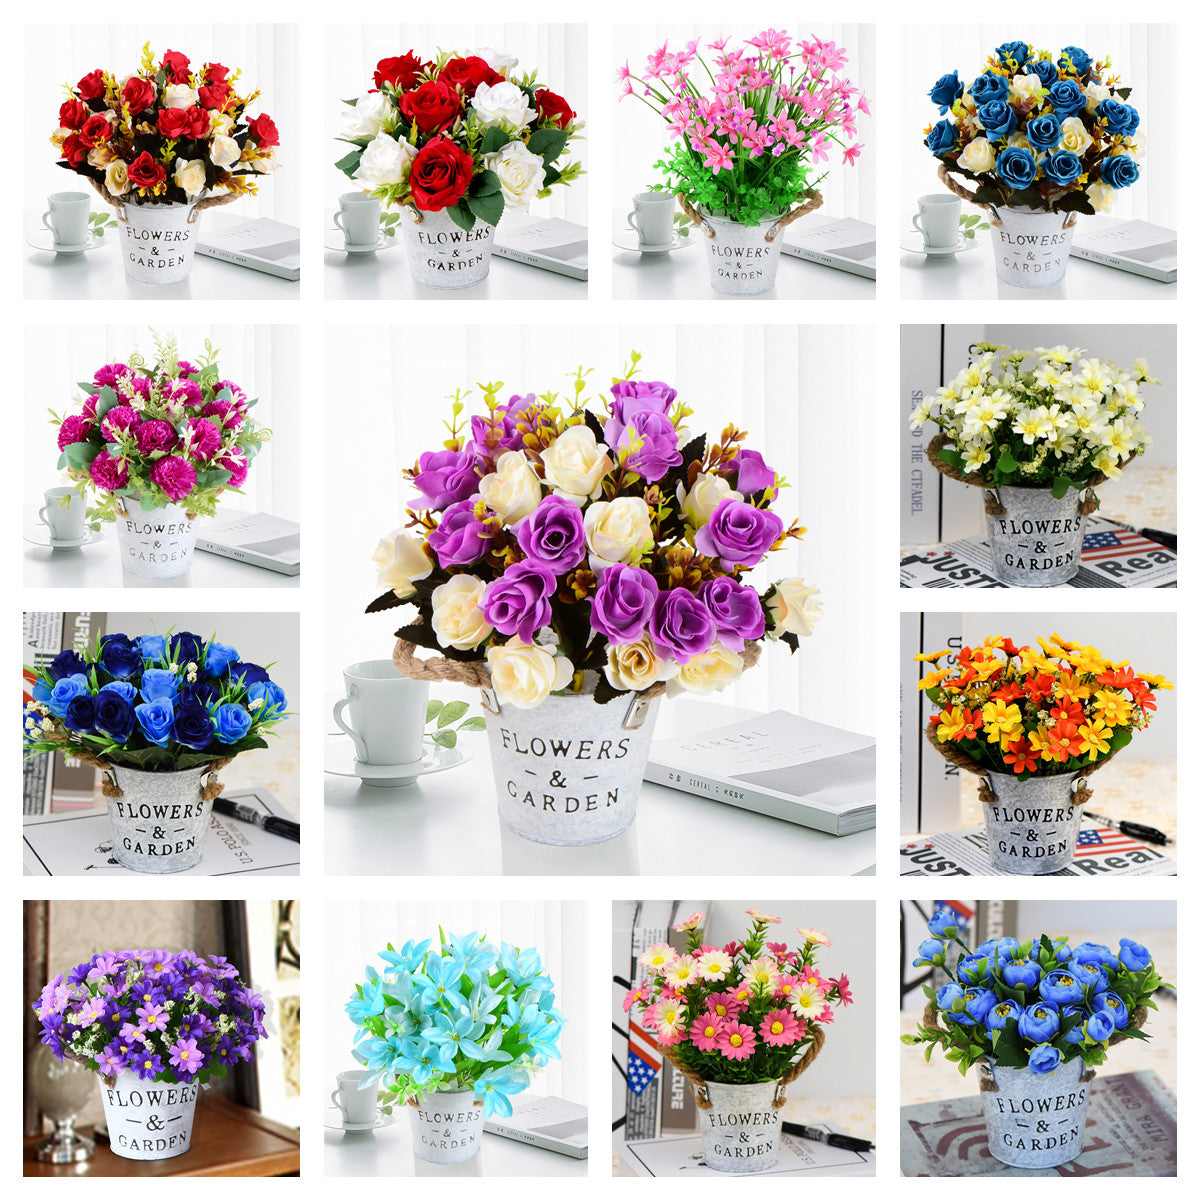 Venta al por mayor de flores y plantas artificiales: suministro en línea de  flores y plantas de seda n.º 1. — Artificialmerch